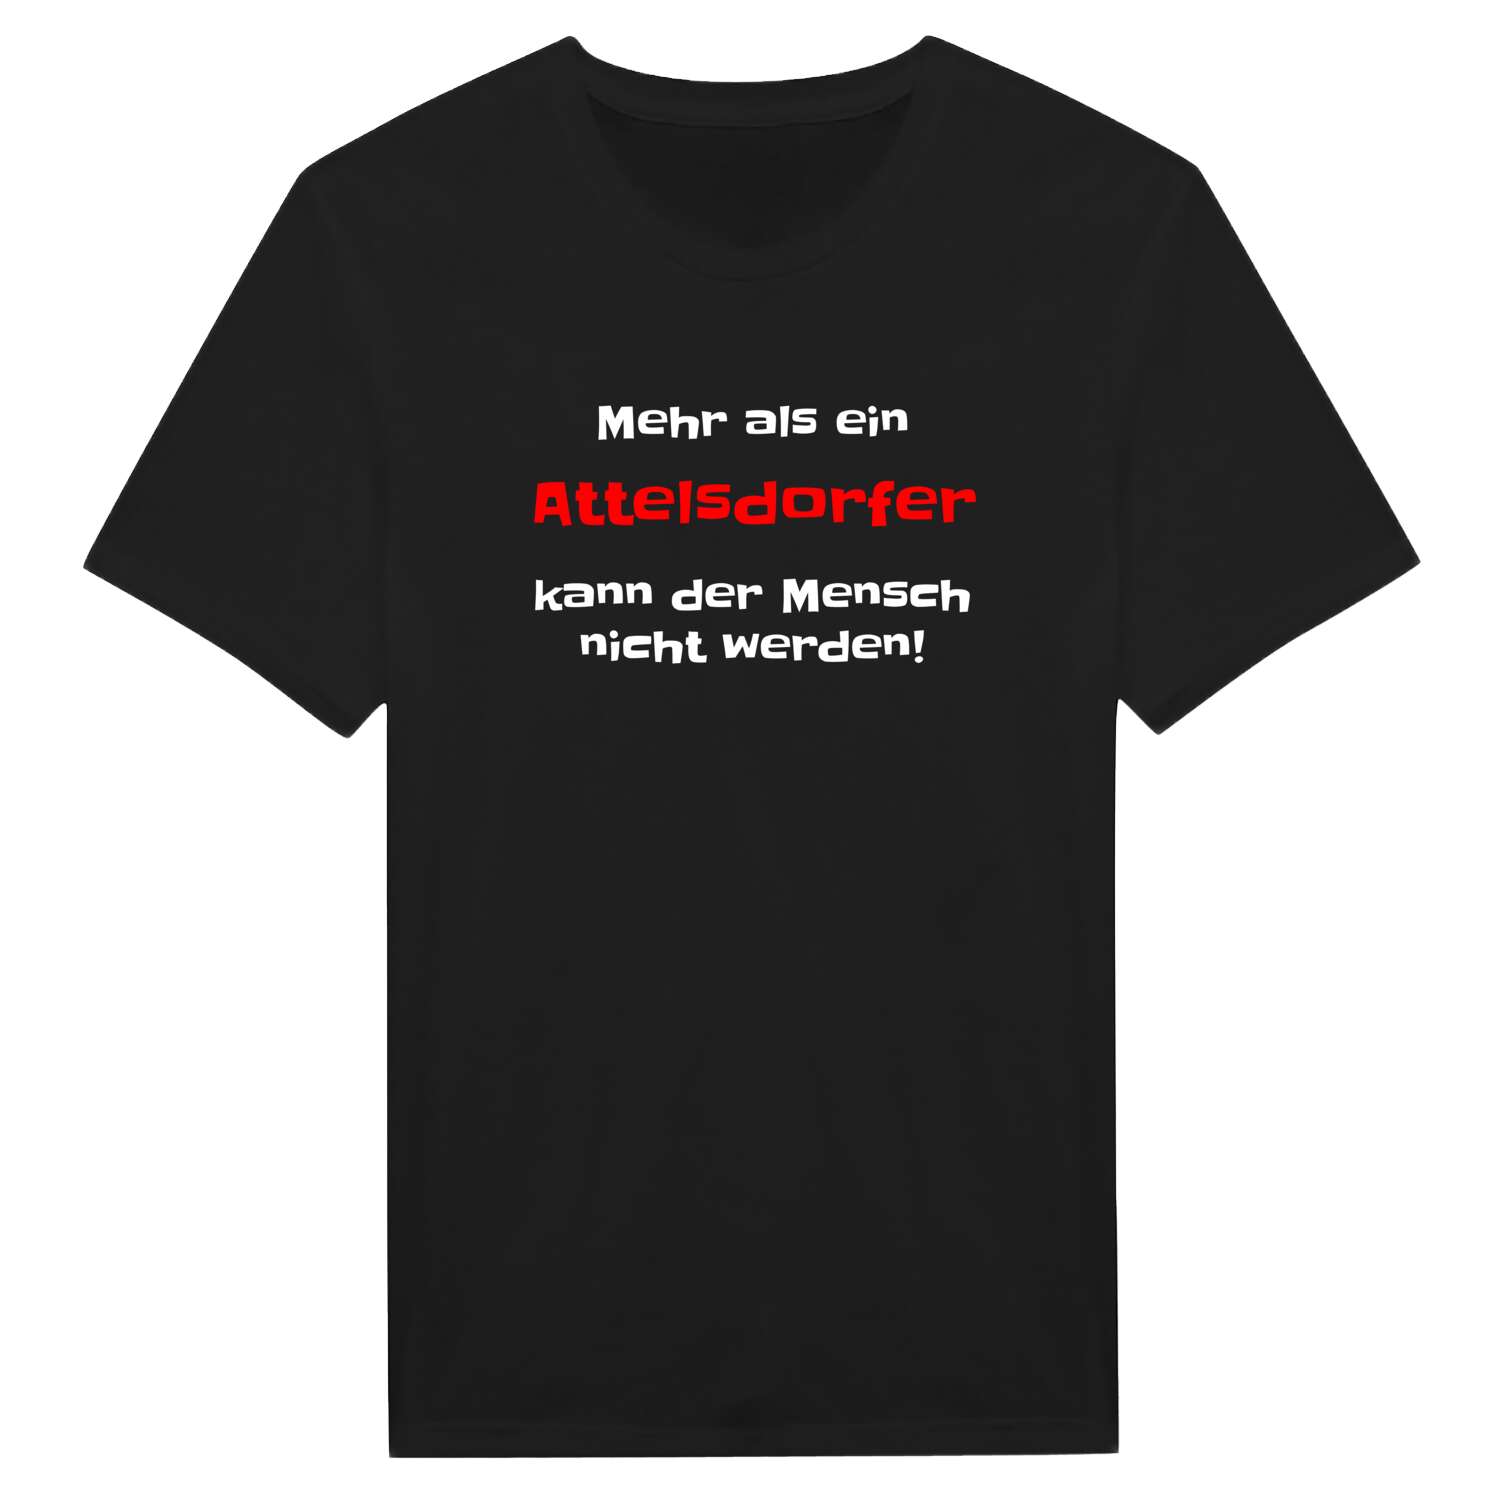 Attelsdorf T-Shirt »Mehr als ein«